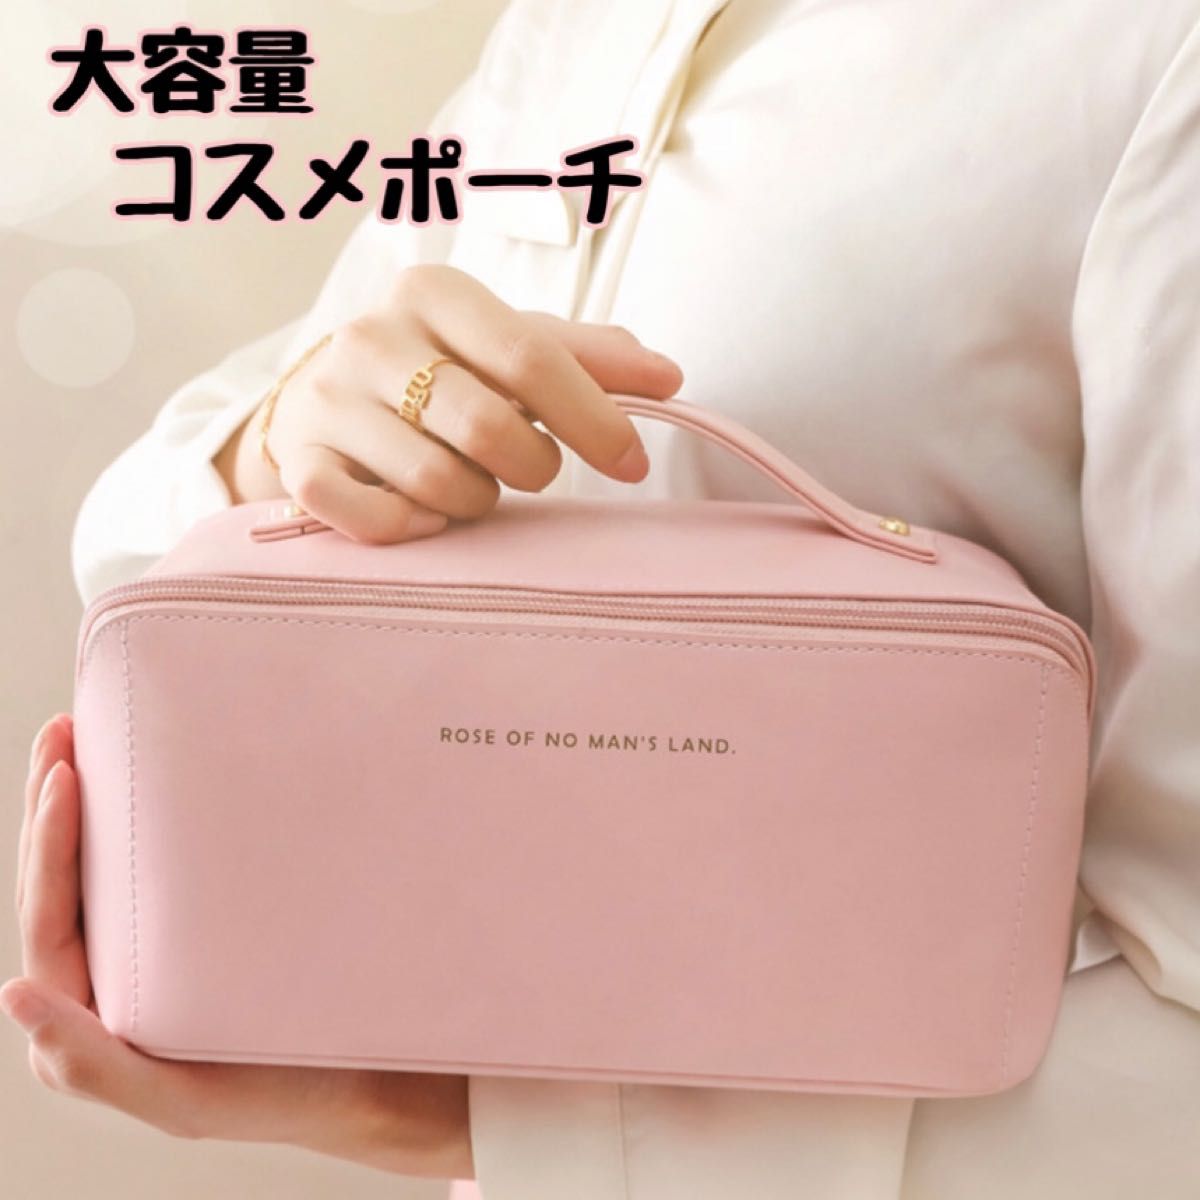 売上実績NO.1 ❤️再入荷❤️メイクボックス 大容量 コスメポーチ 韓国 バニティ ピンク